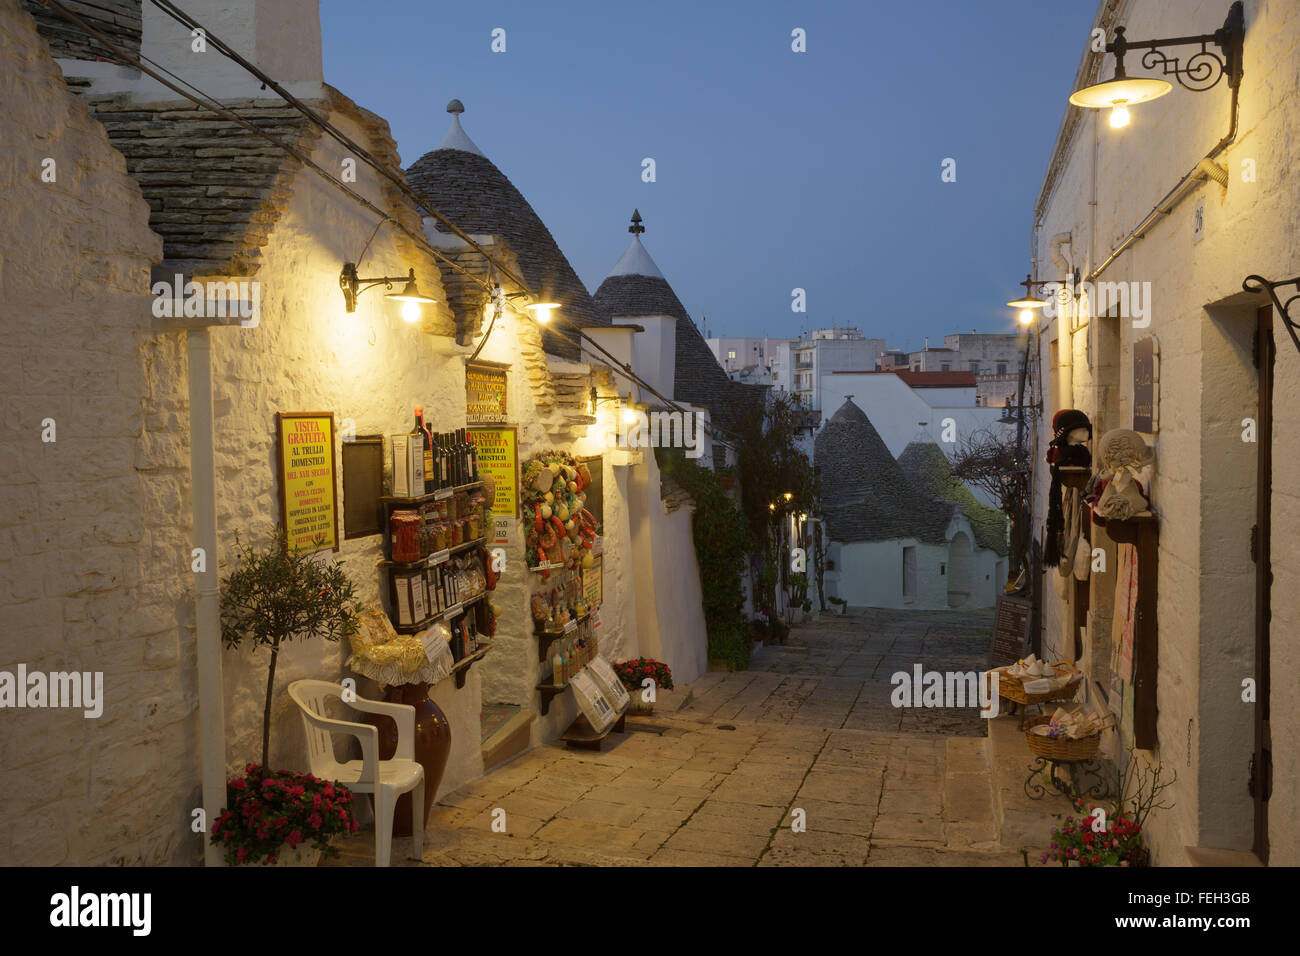 Rue et boutiques dans le quartier de Rione Monti trulli à Alberobello, dans les Pouilles, Italie Banque D'Images